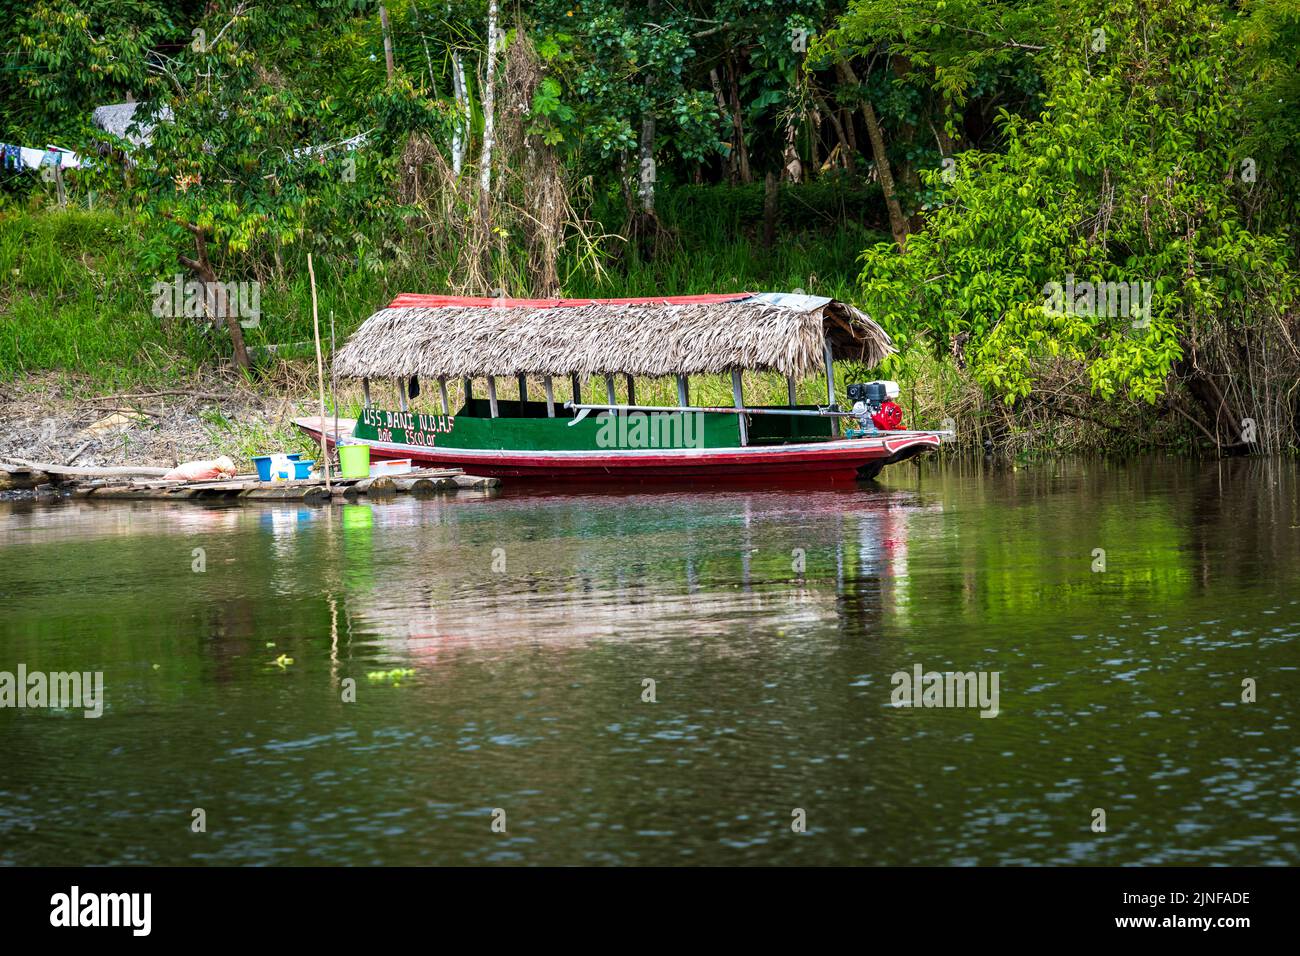 Die USA Dani dient als Schultransportboot für Riberenos im Ayacucho-Gebiet des peruanischen Amazonas Stockfoto